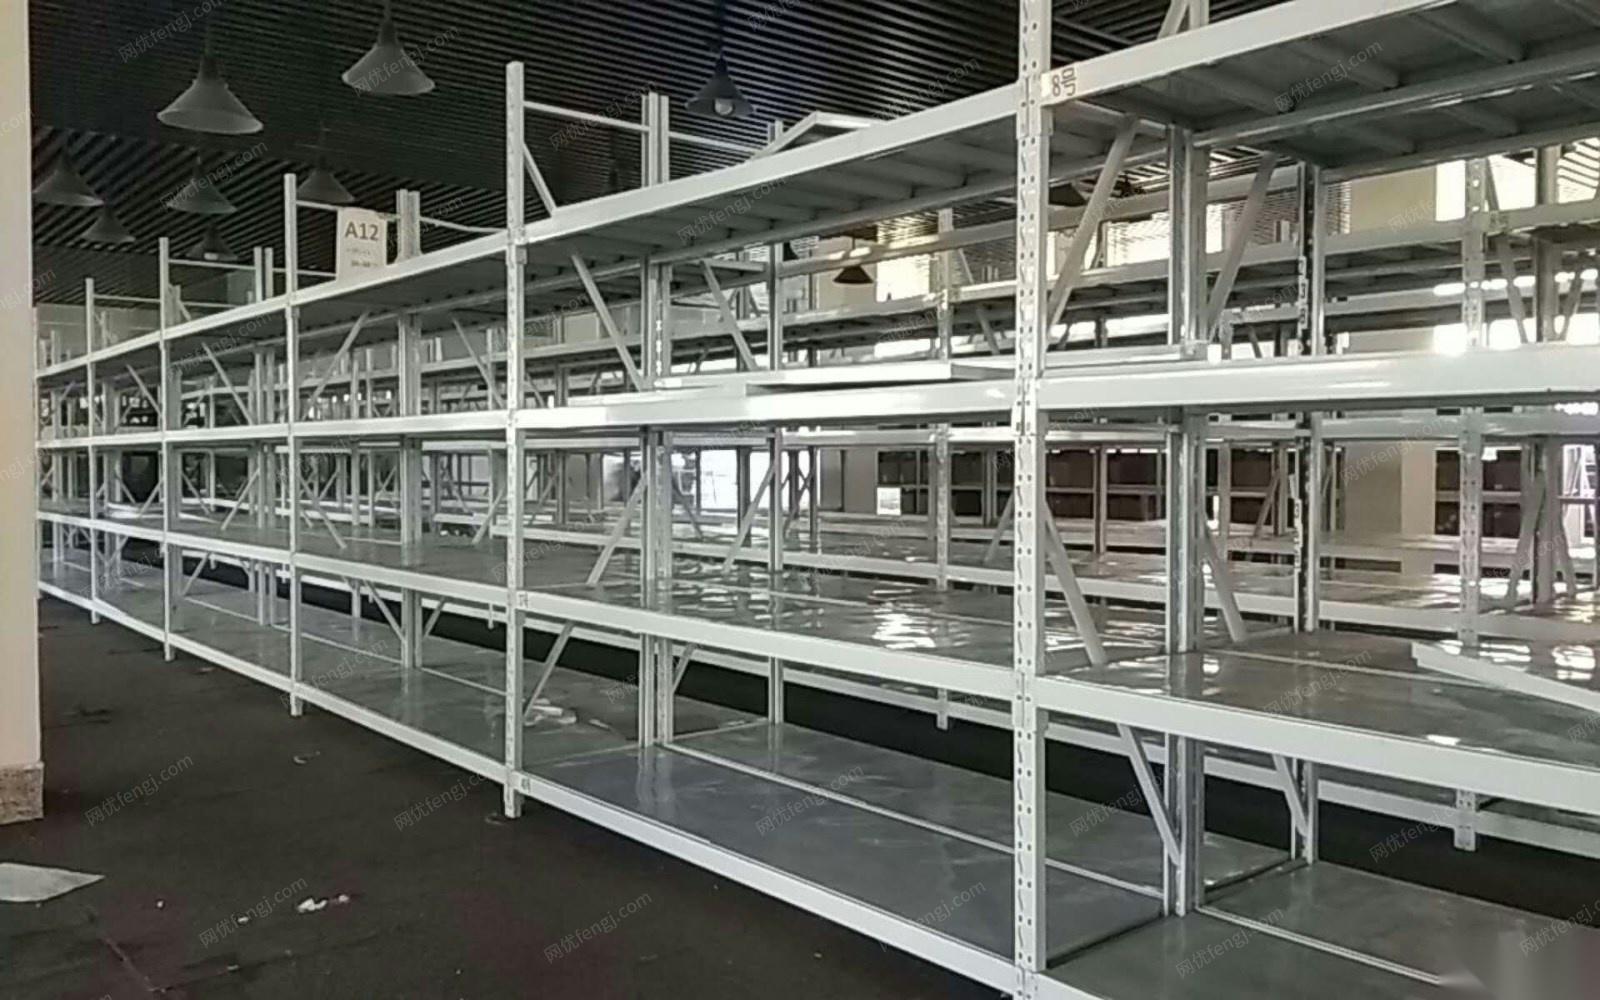 义乌有一批2手仓库货架出售 200X200X50的尺寸100多个